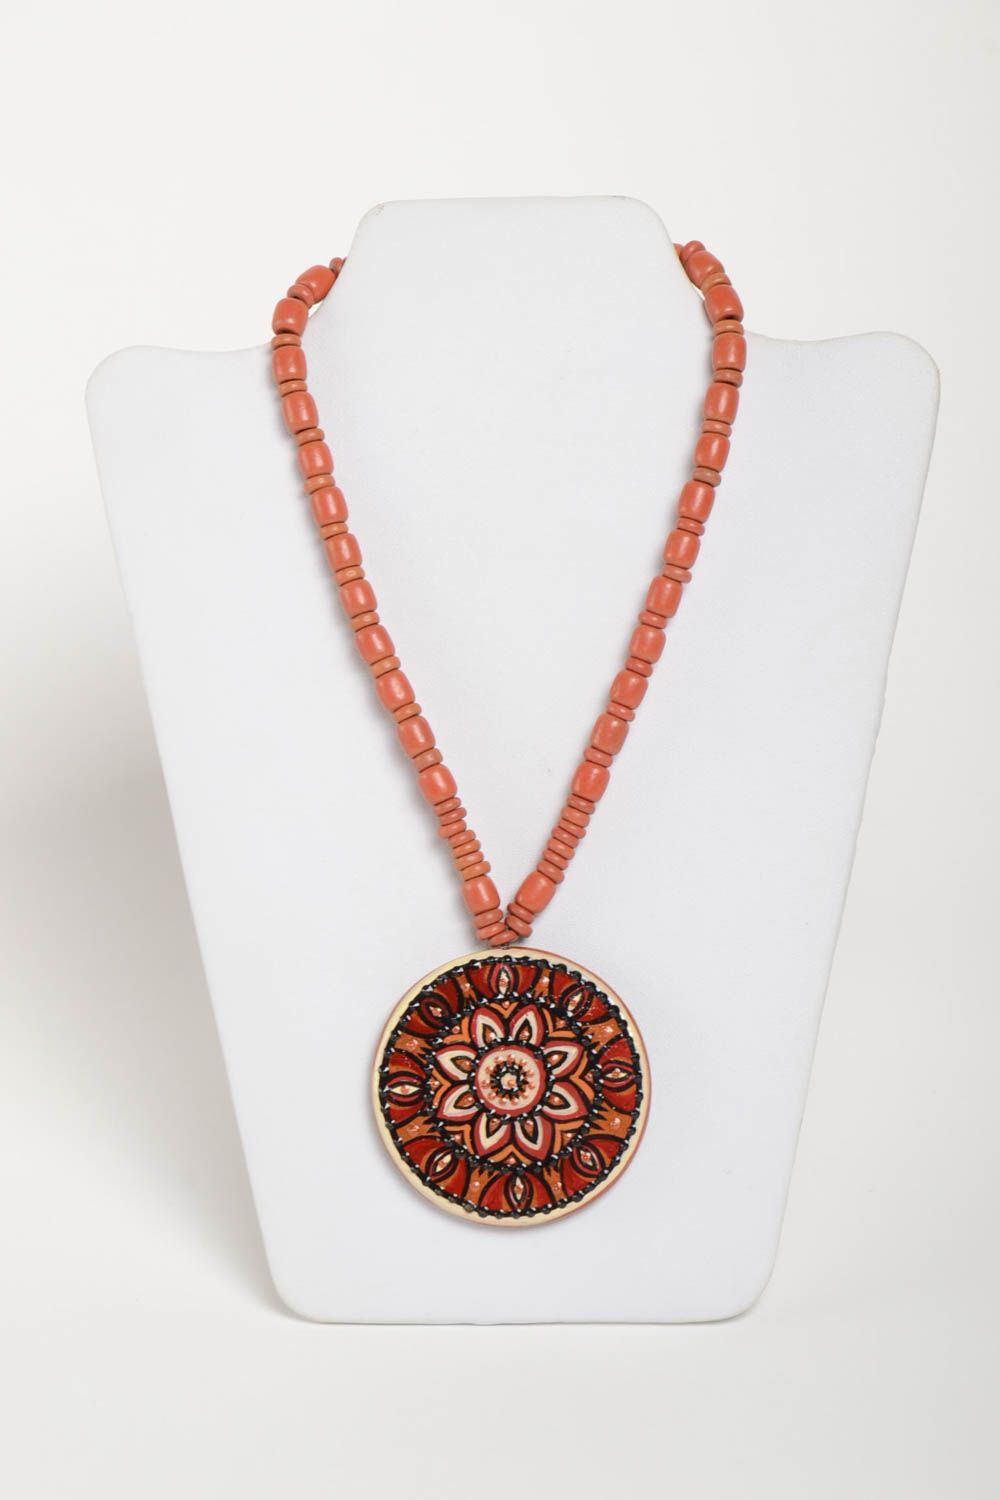 Handmade necklace ceramic jewelry pendant necklace ethnic jewellery photo 2